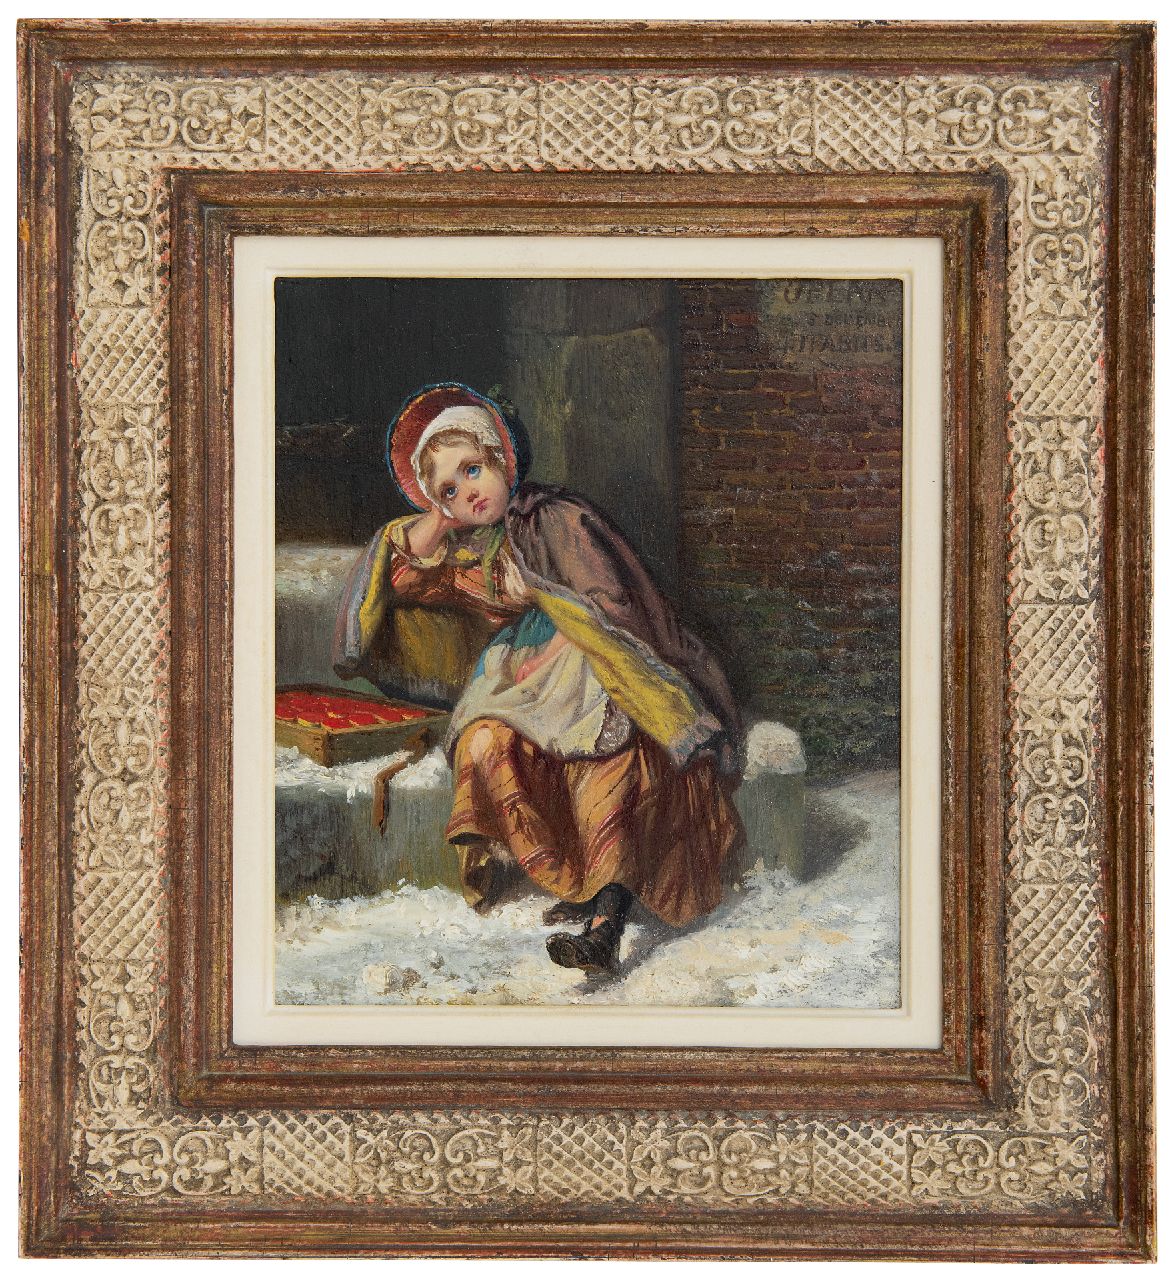 Fabius J.  | Jan Fabius | Schilderijen te koop aangeboden | Luciferverkoopstertje in de sneeuw, olieverf op paneel 21,7 x 18,9 cm, gesigneerd rechtsboven